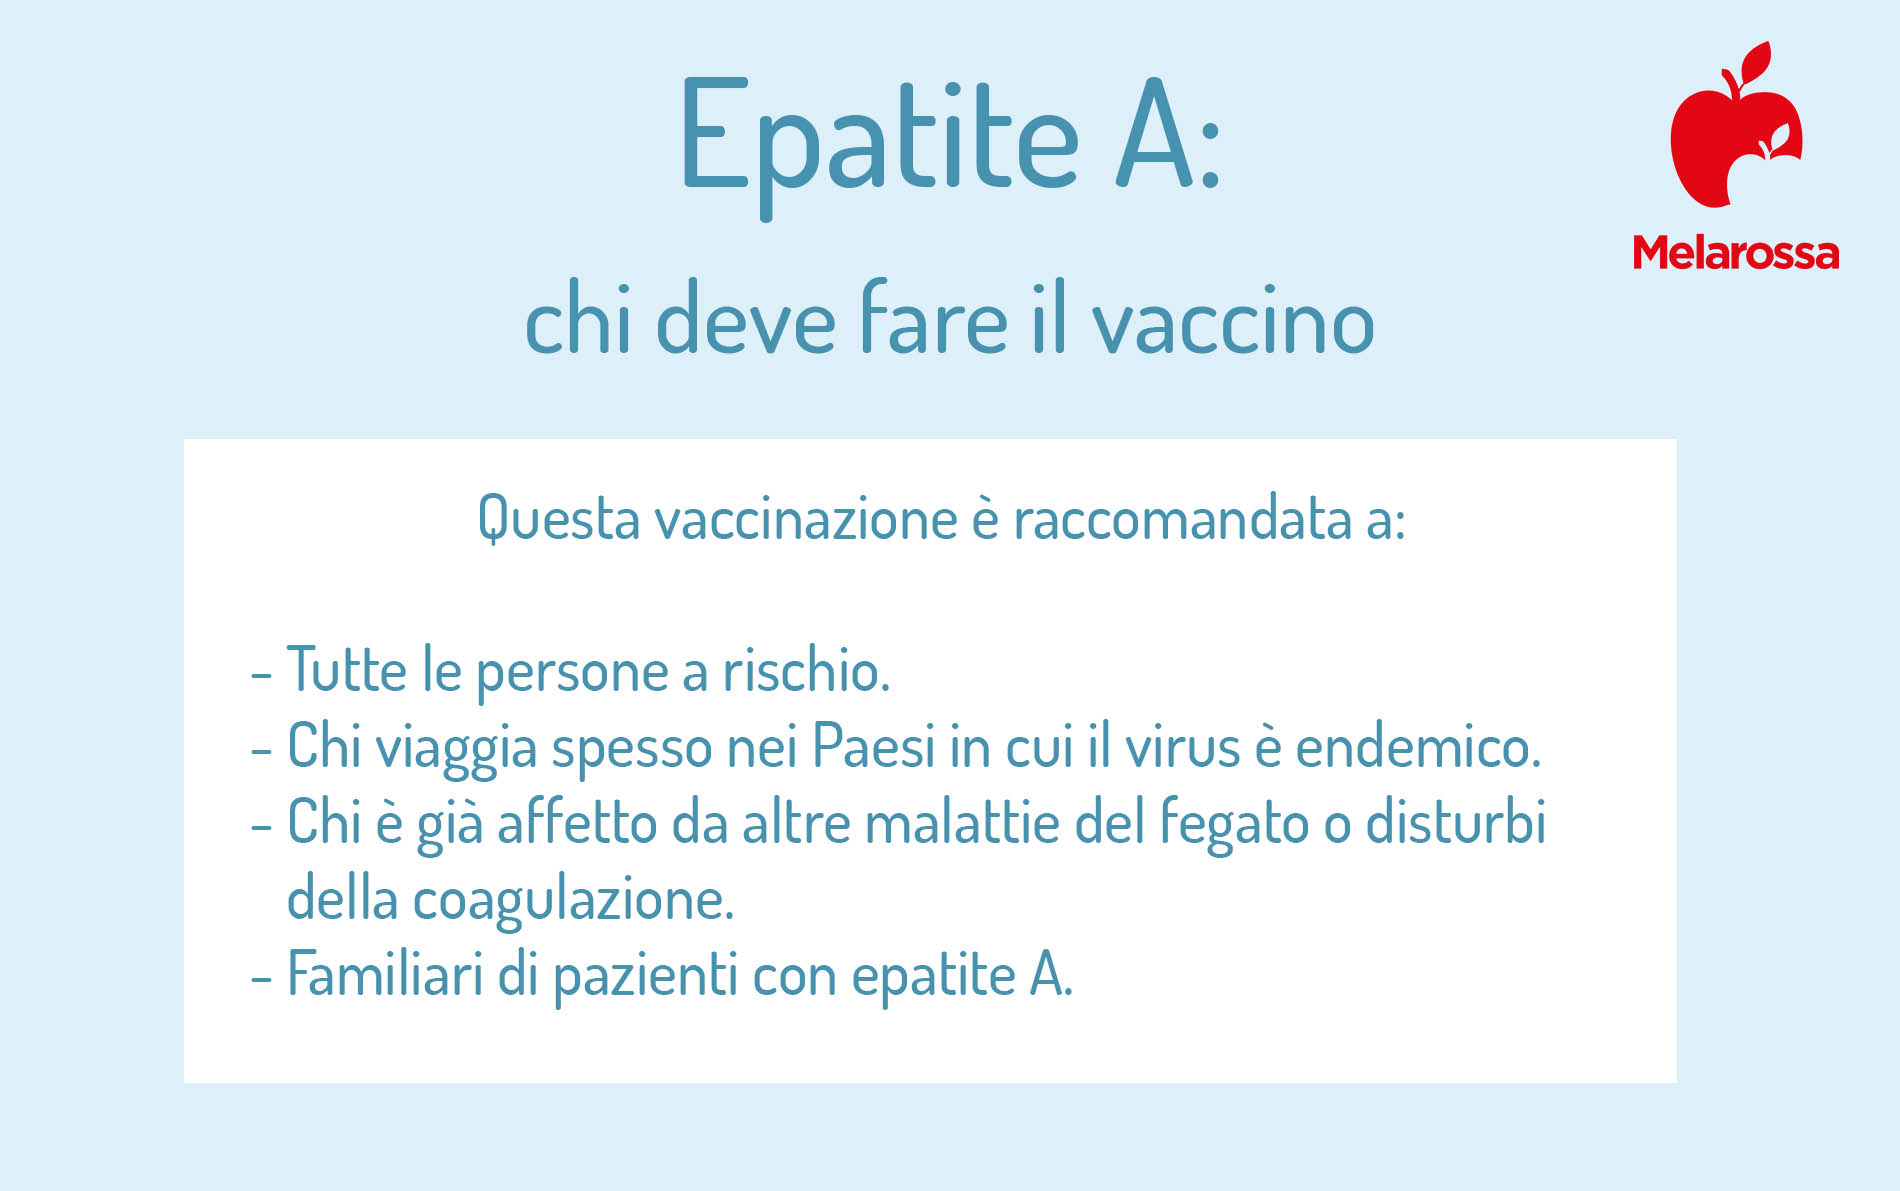 Epatite A. chi deve fare il vaccino